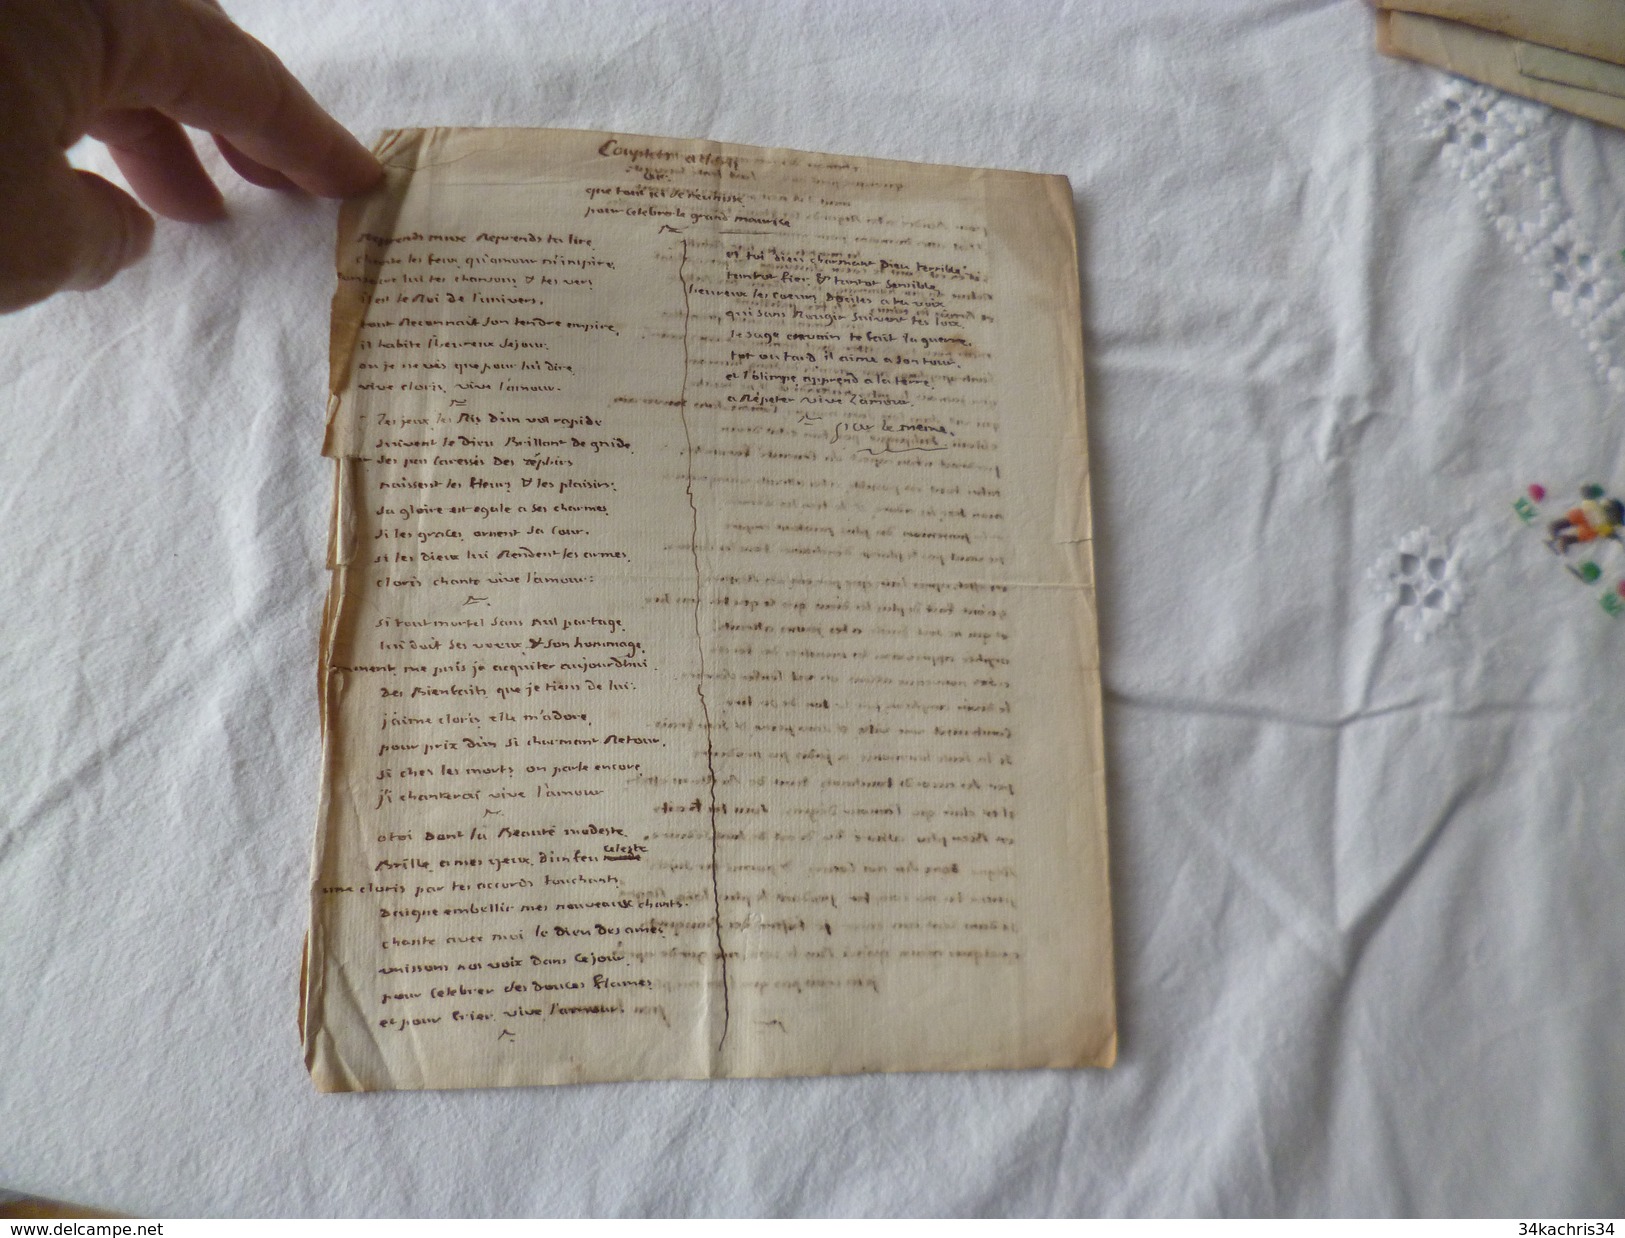 Chanson Poésie Manuscrit Vers Adressés à Mme La Duchesse Baronne De Latour Vœux Fin 18ème Surement - Manuscritos